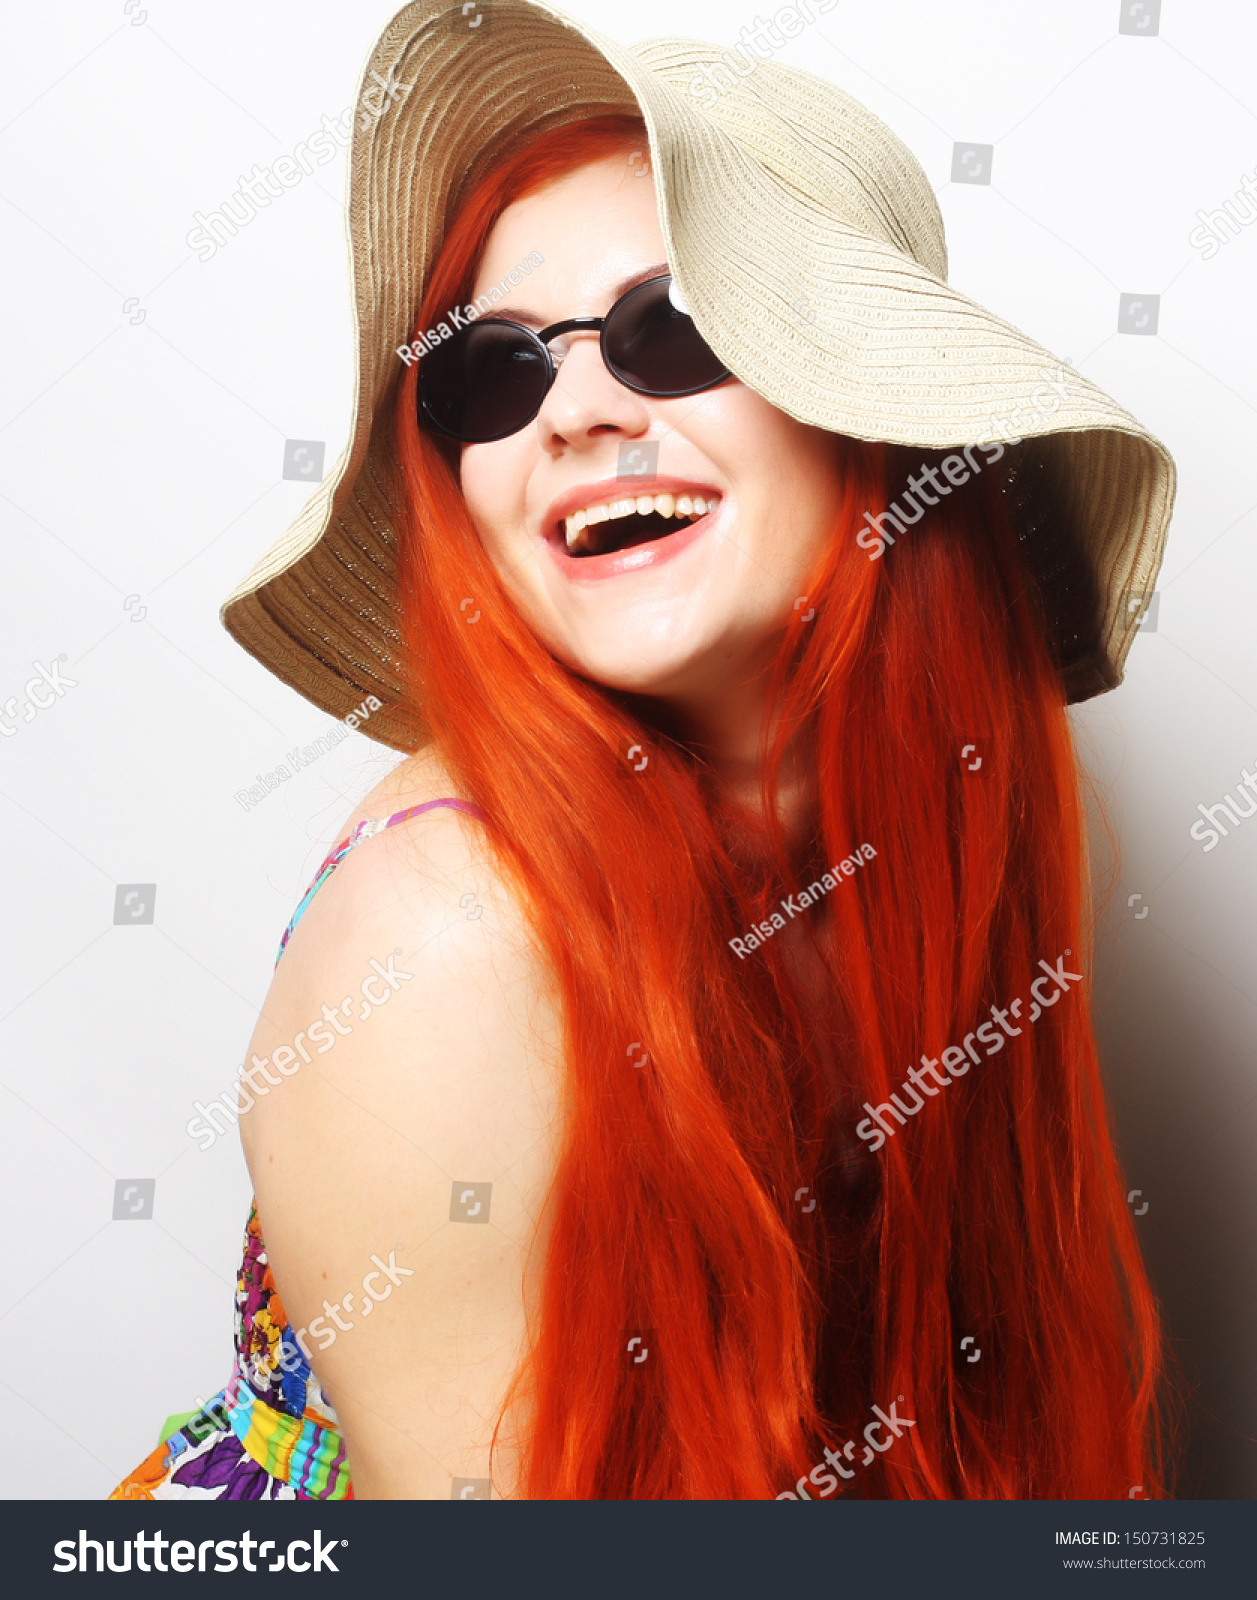 Fashion Woman Wearing Sunglasses Hat Romantic Stock Photo 150731825 ...